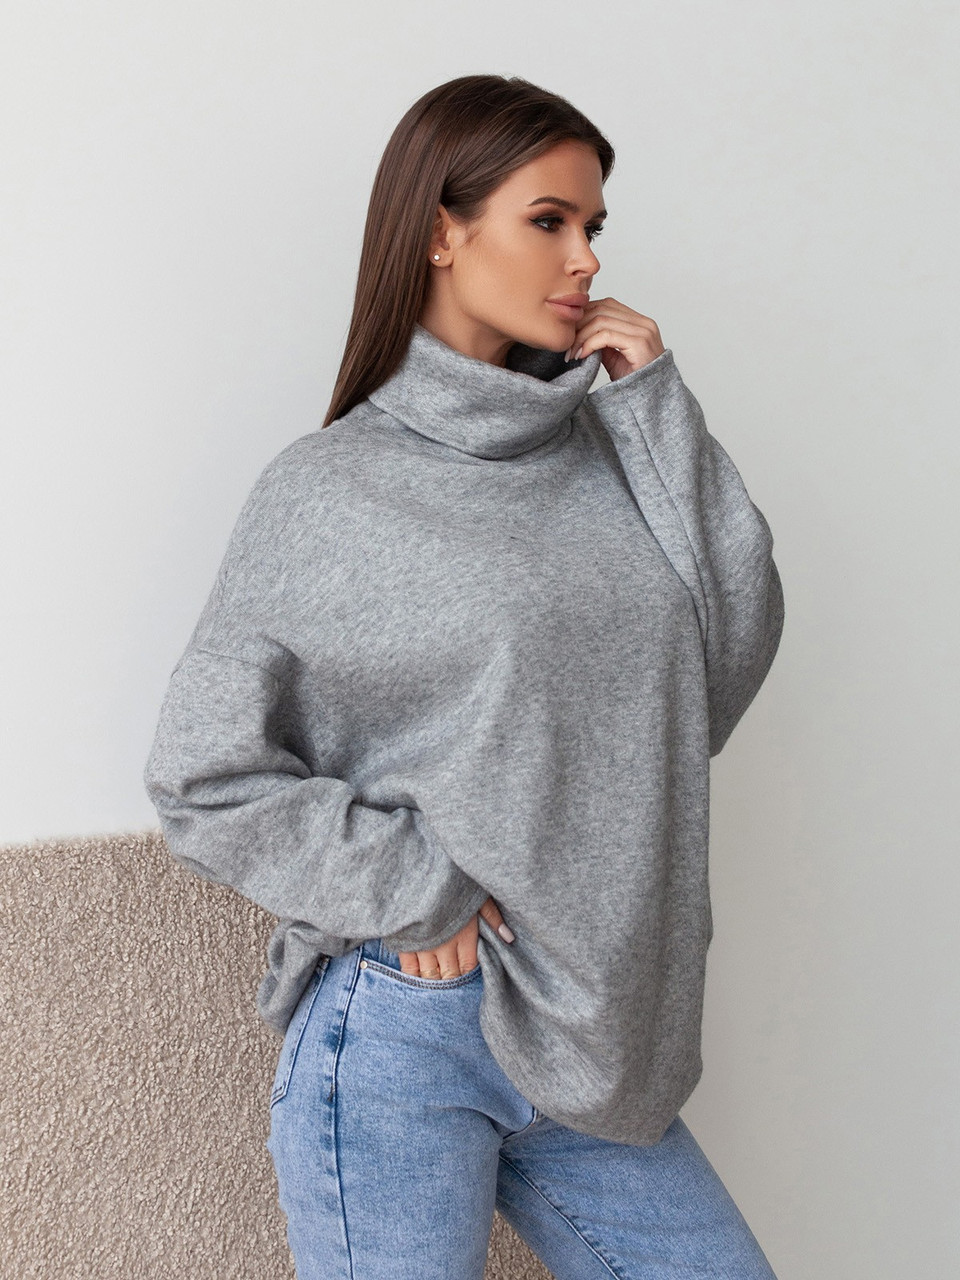 Жіночий сірий ангоровий светр оверсайз